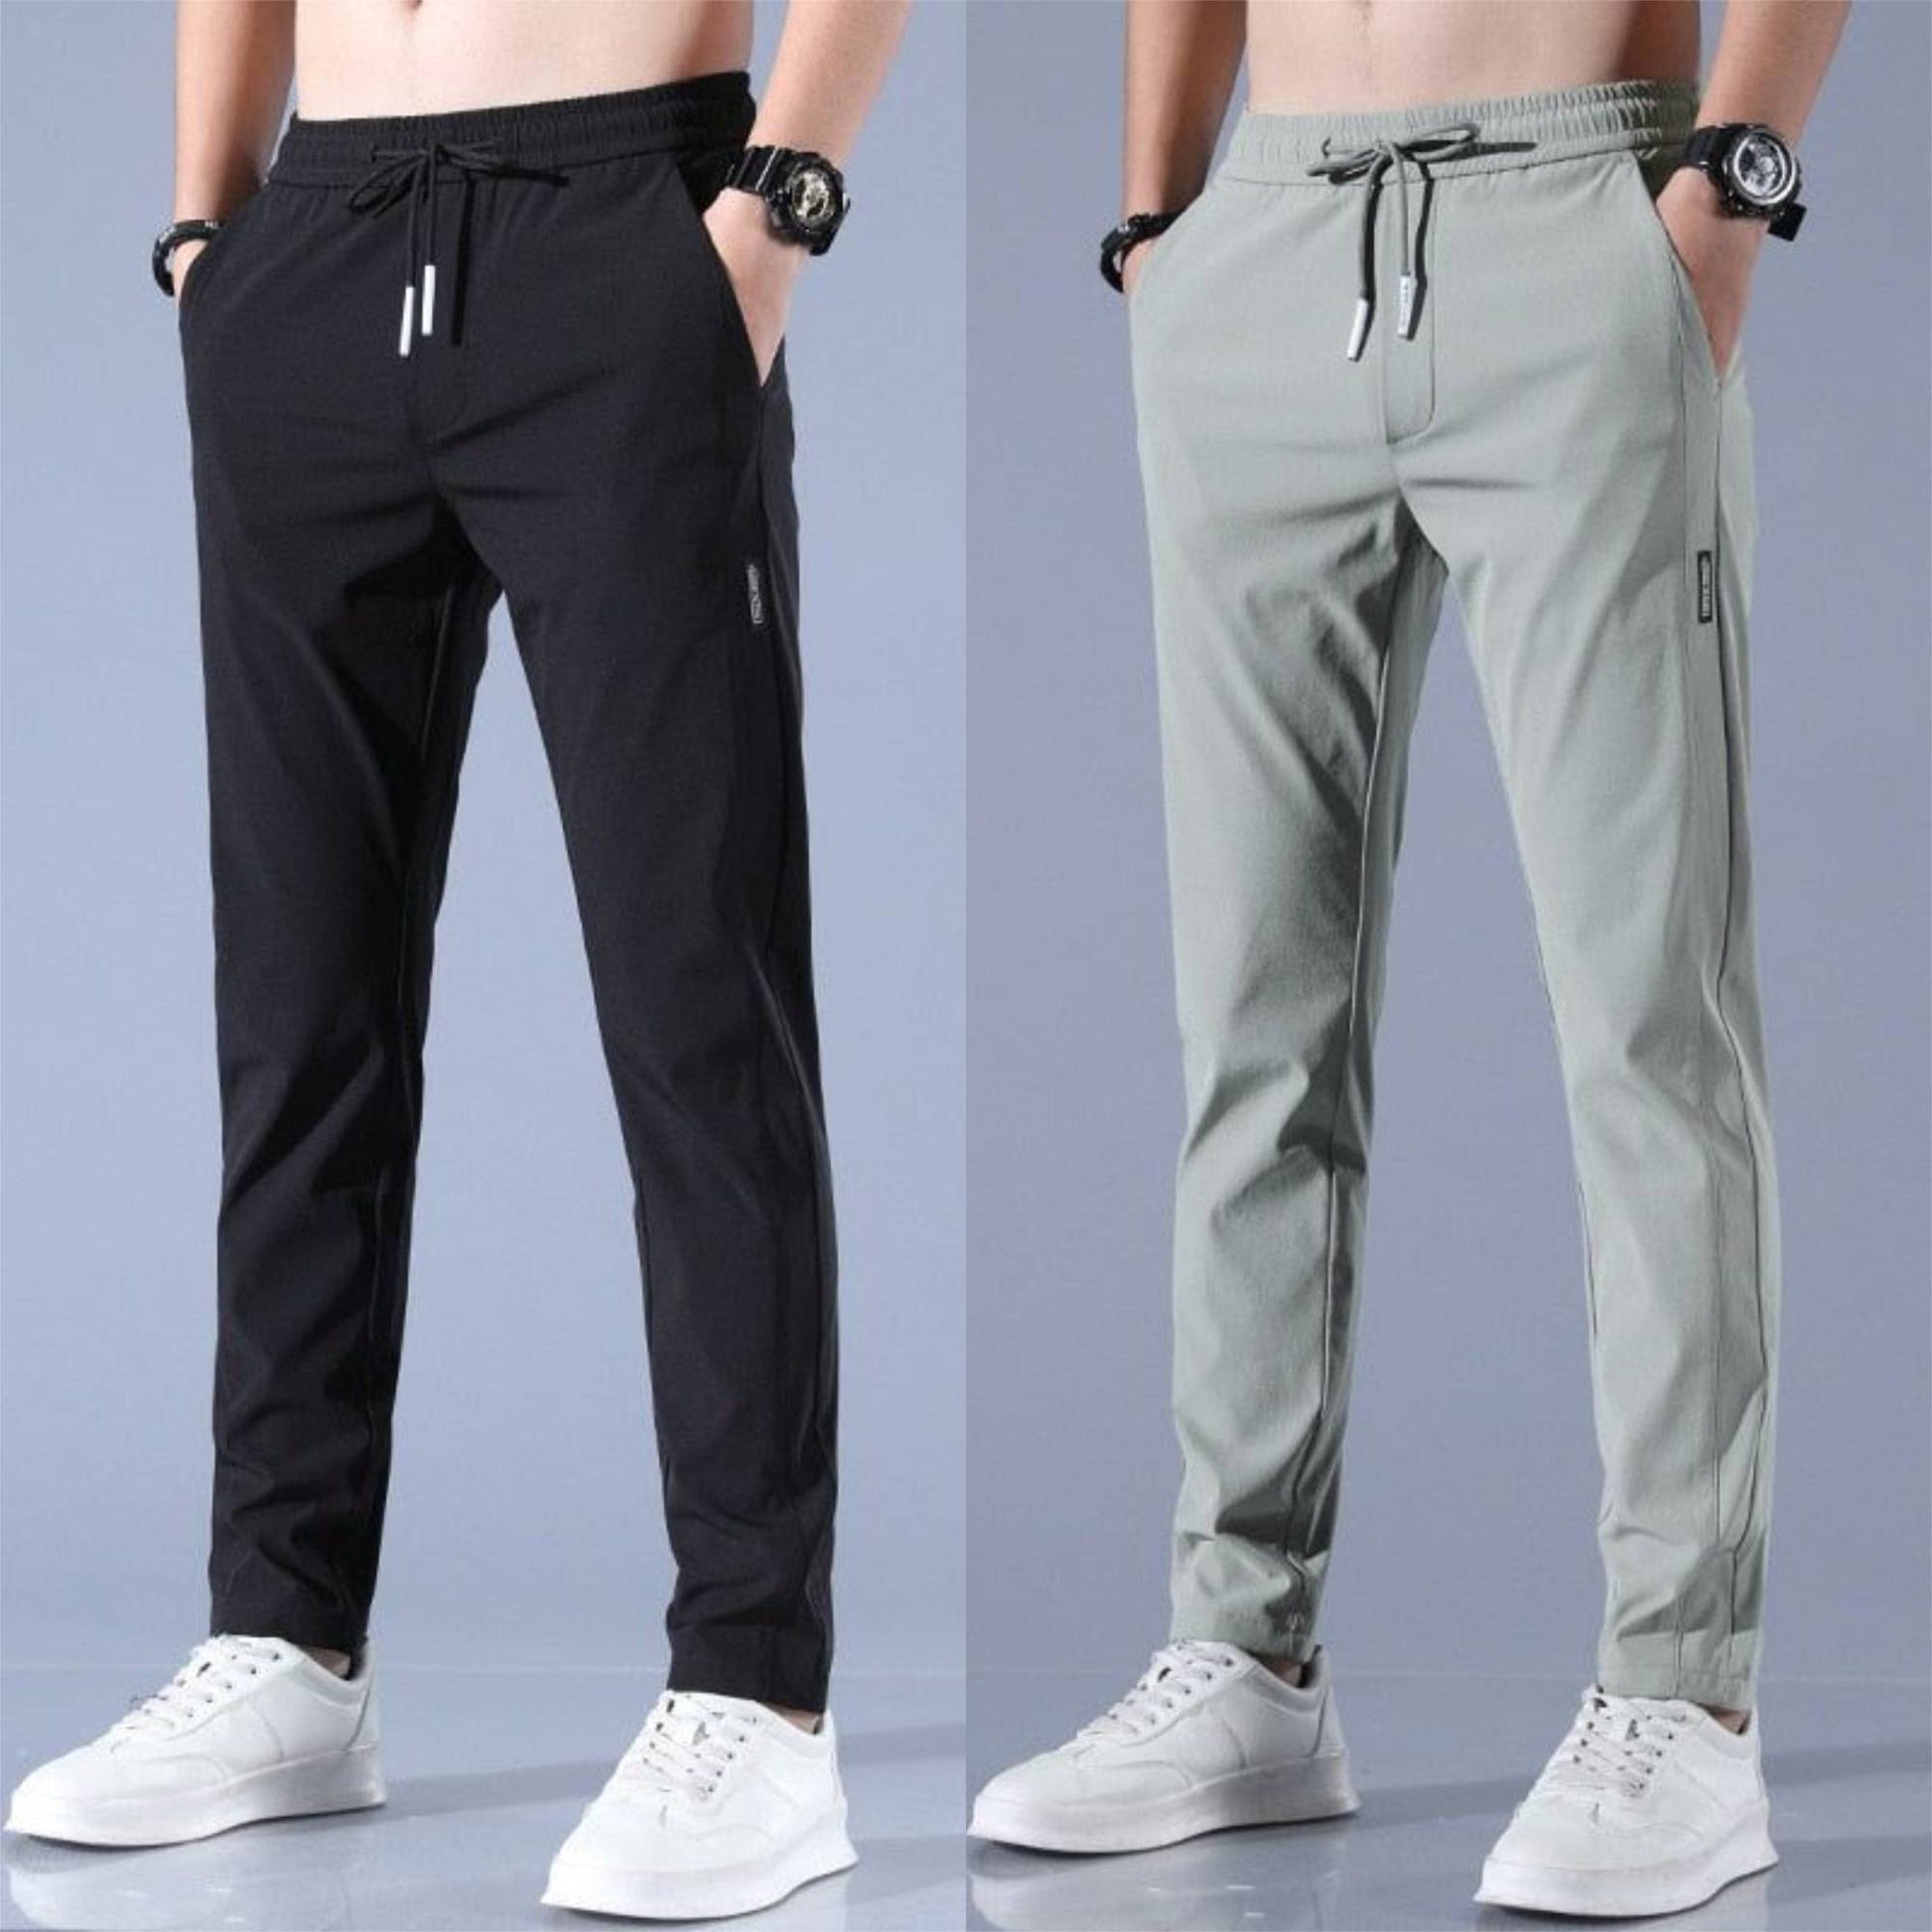 Stefan | SpeedDry Flexible Pants (1+1 FREE) - Black / Green / L - AMVIM